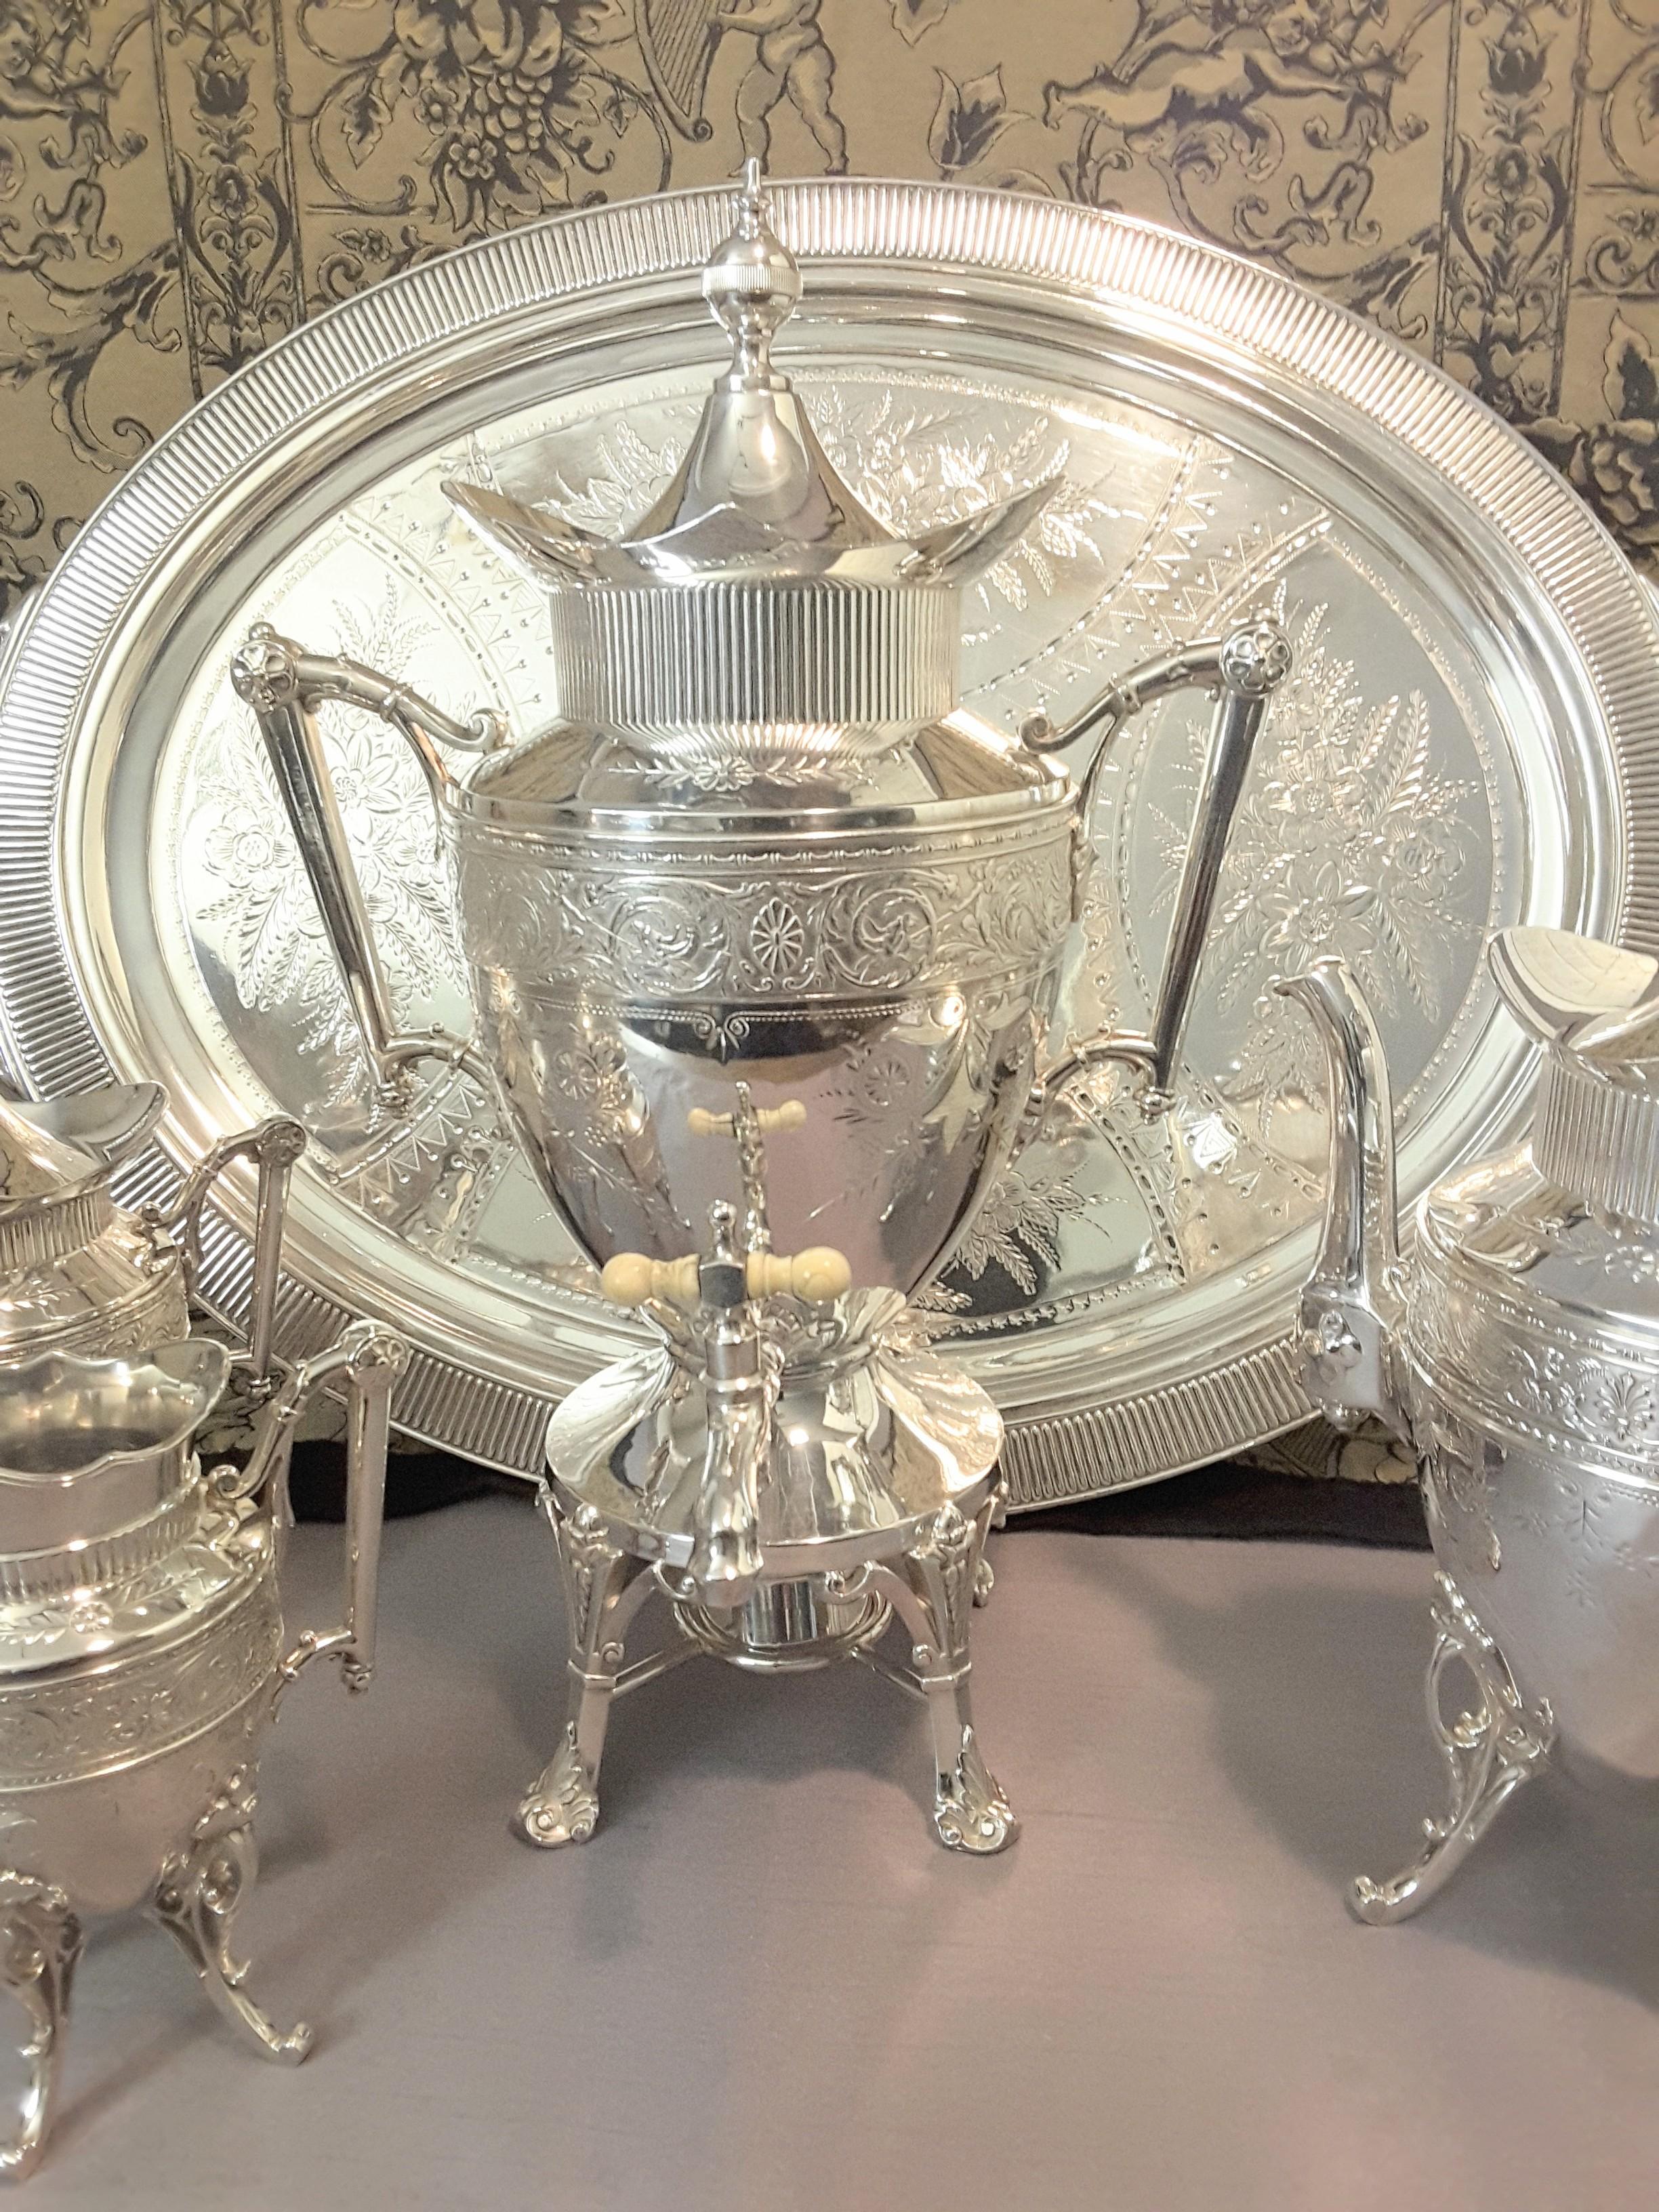 Exquis service à thé en métal argenté du mouvement esthétique par Simpson, Hall & Miller Co. vers 1870-1890, ensemble à grande échelle composé d'une bouilloire sur pied avec brûleur, d'une théière, d'un sucrier couvert et d'un crémier avec un très